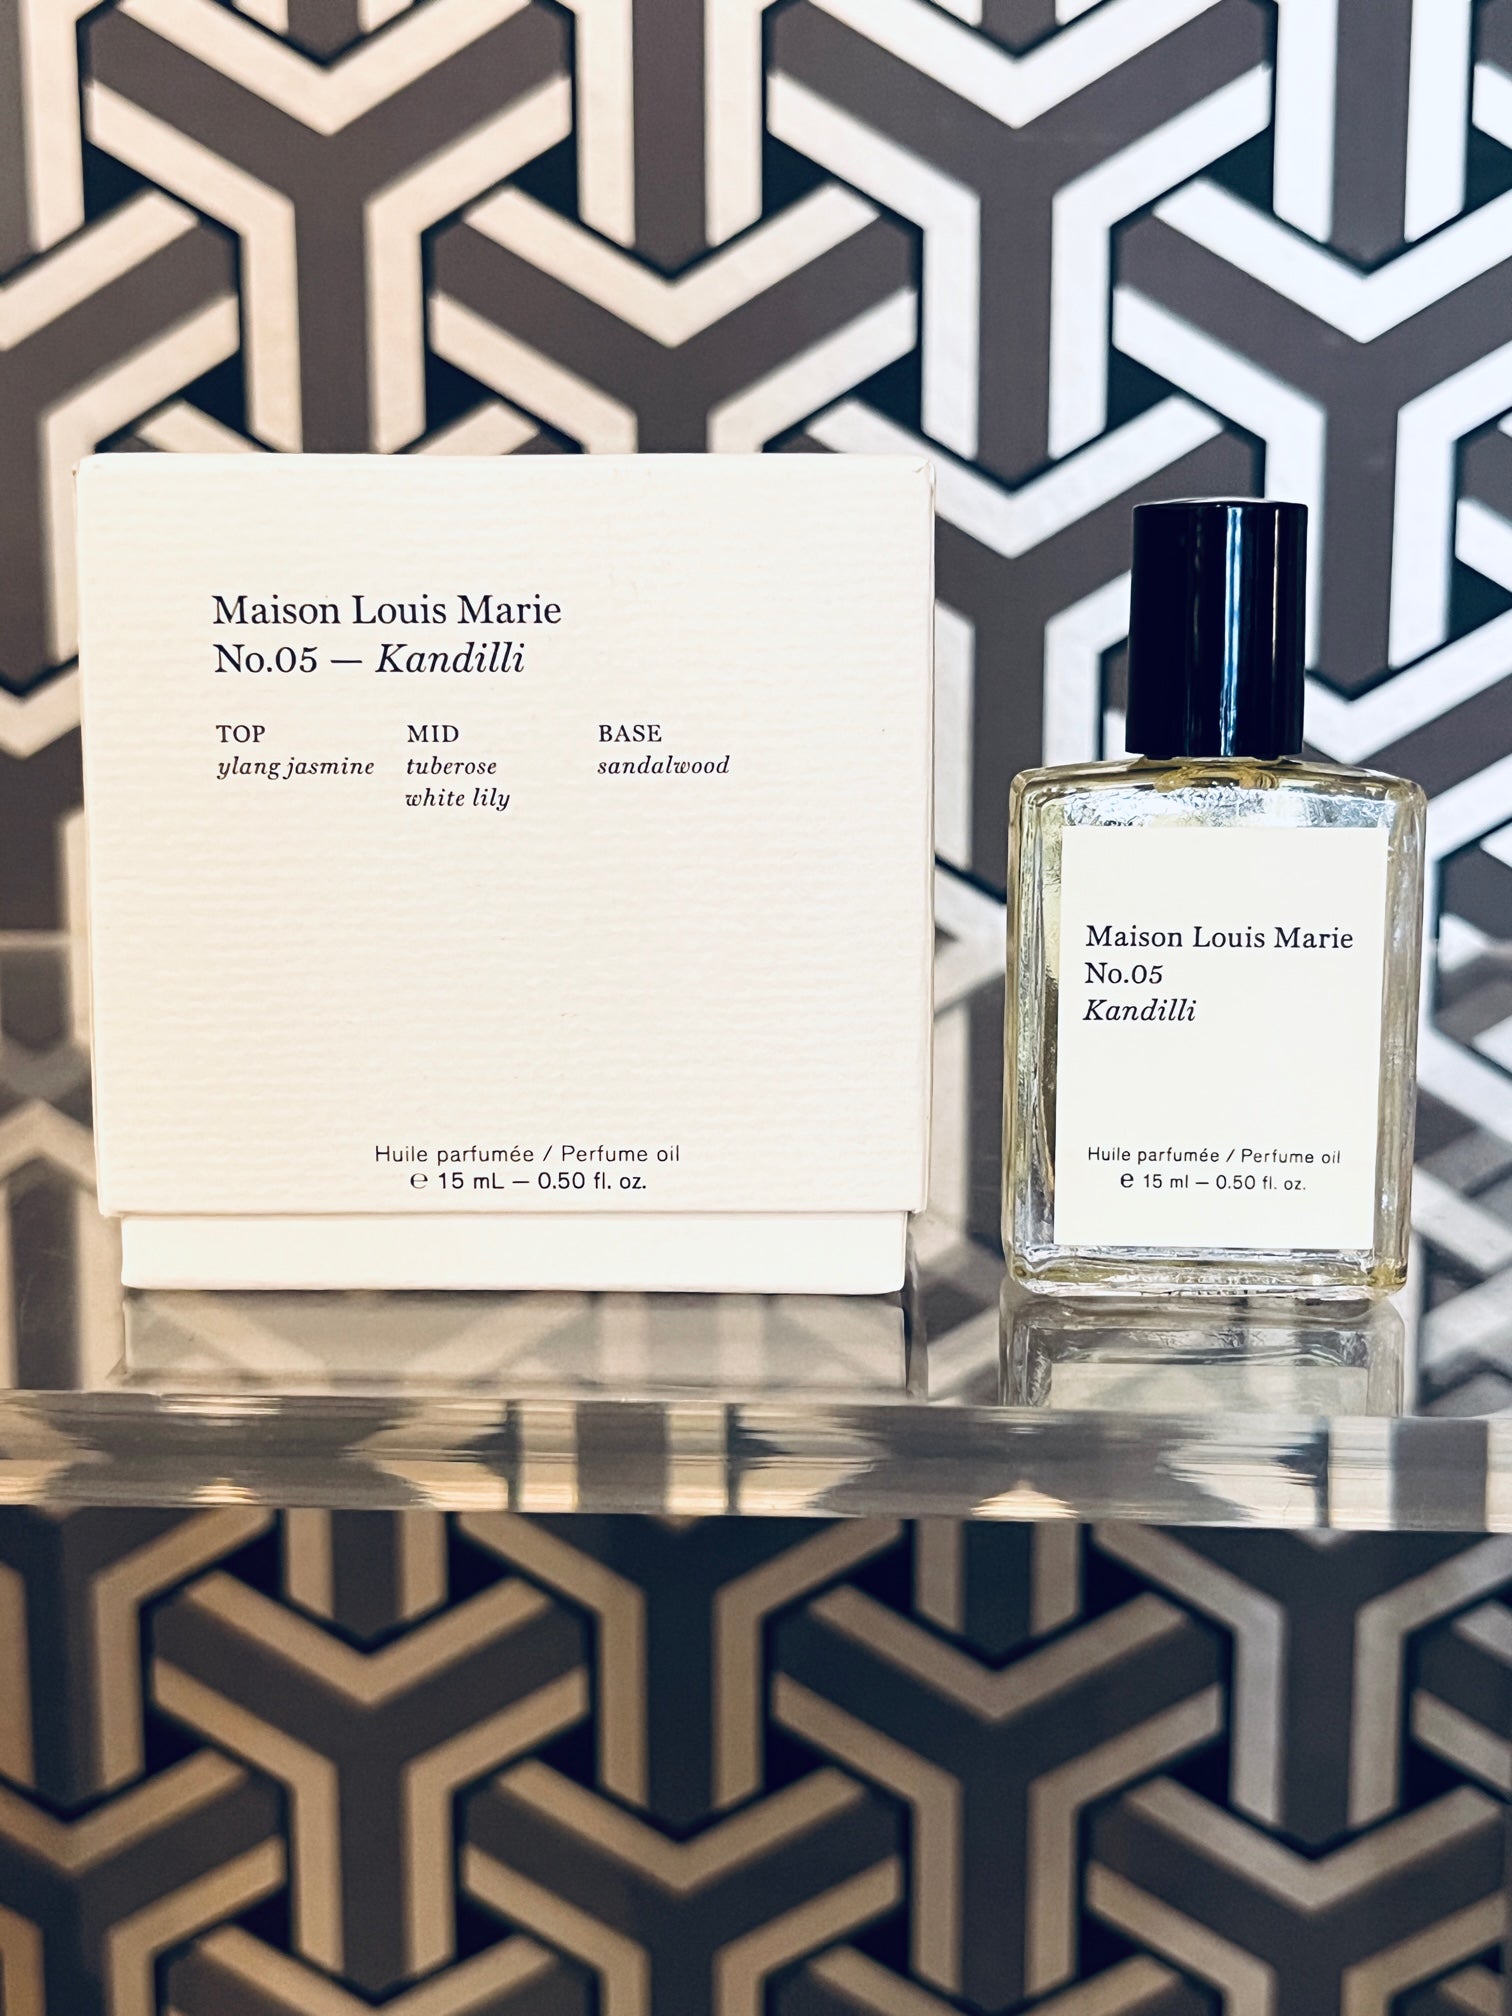 Maison Louis Marie No 3 LEtang Noir Perfume Oil